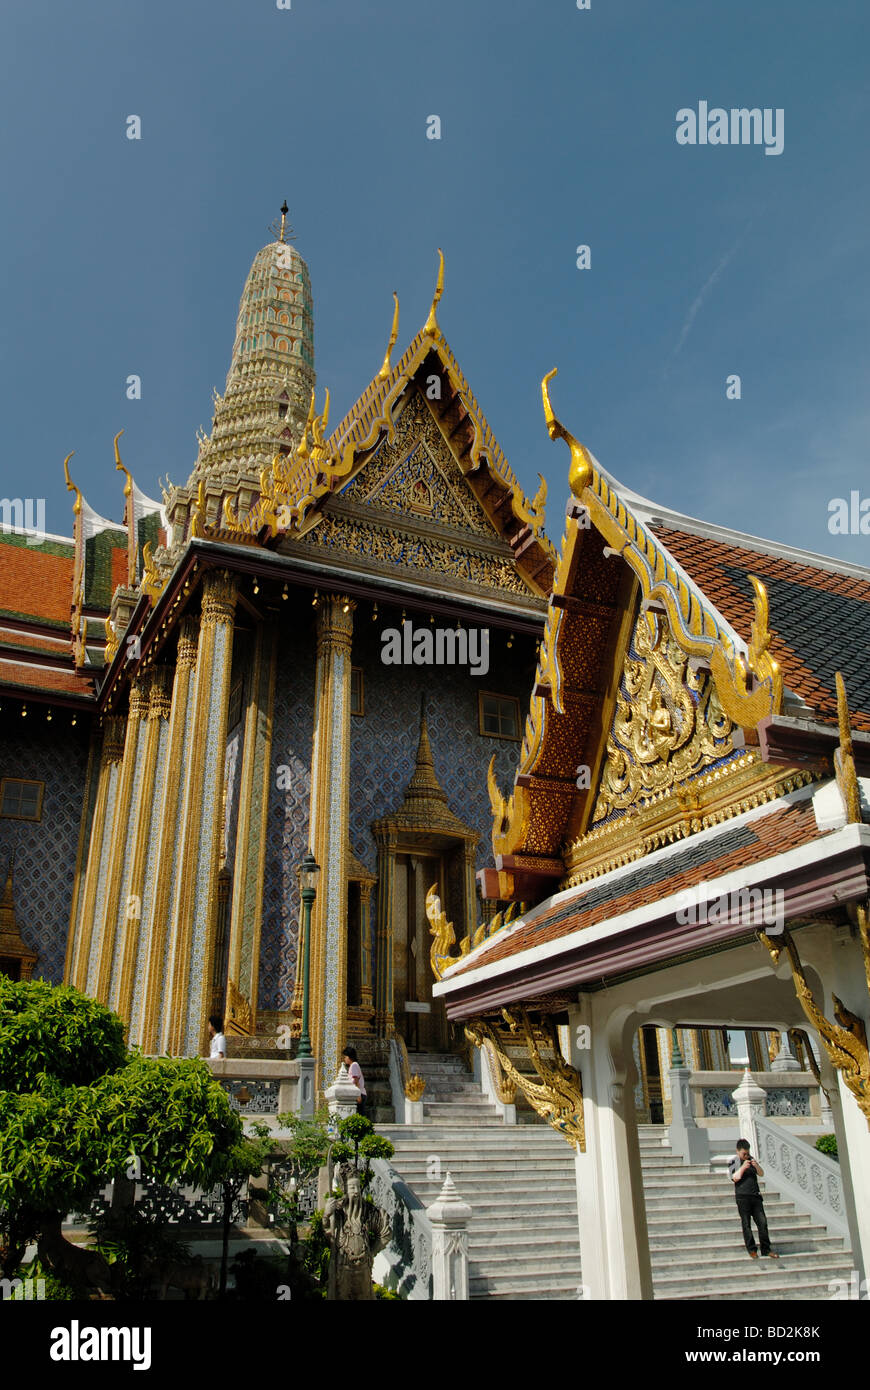 The Grand Palace in Bangkok / Krung Thep Mahanakhon in Thailand Stock Photo